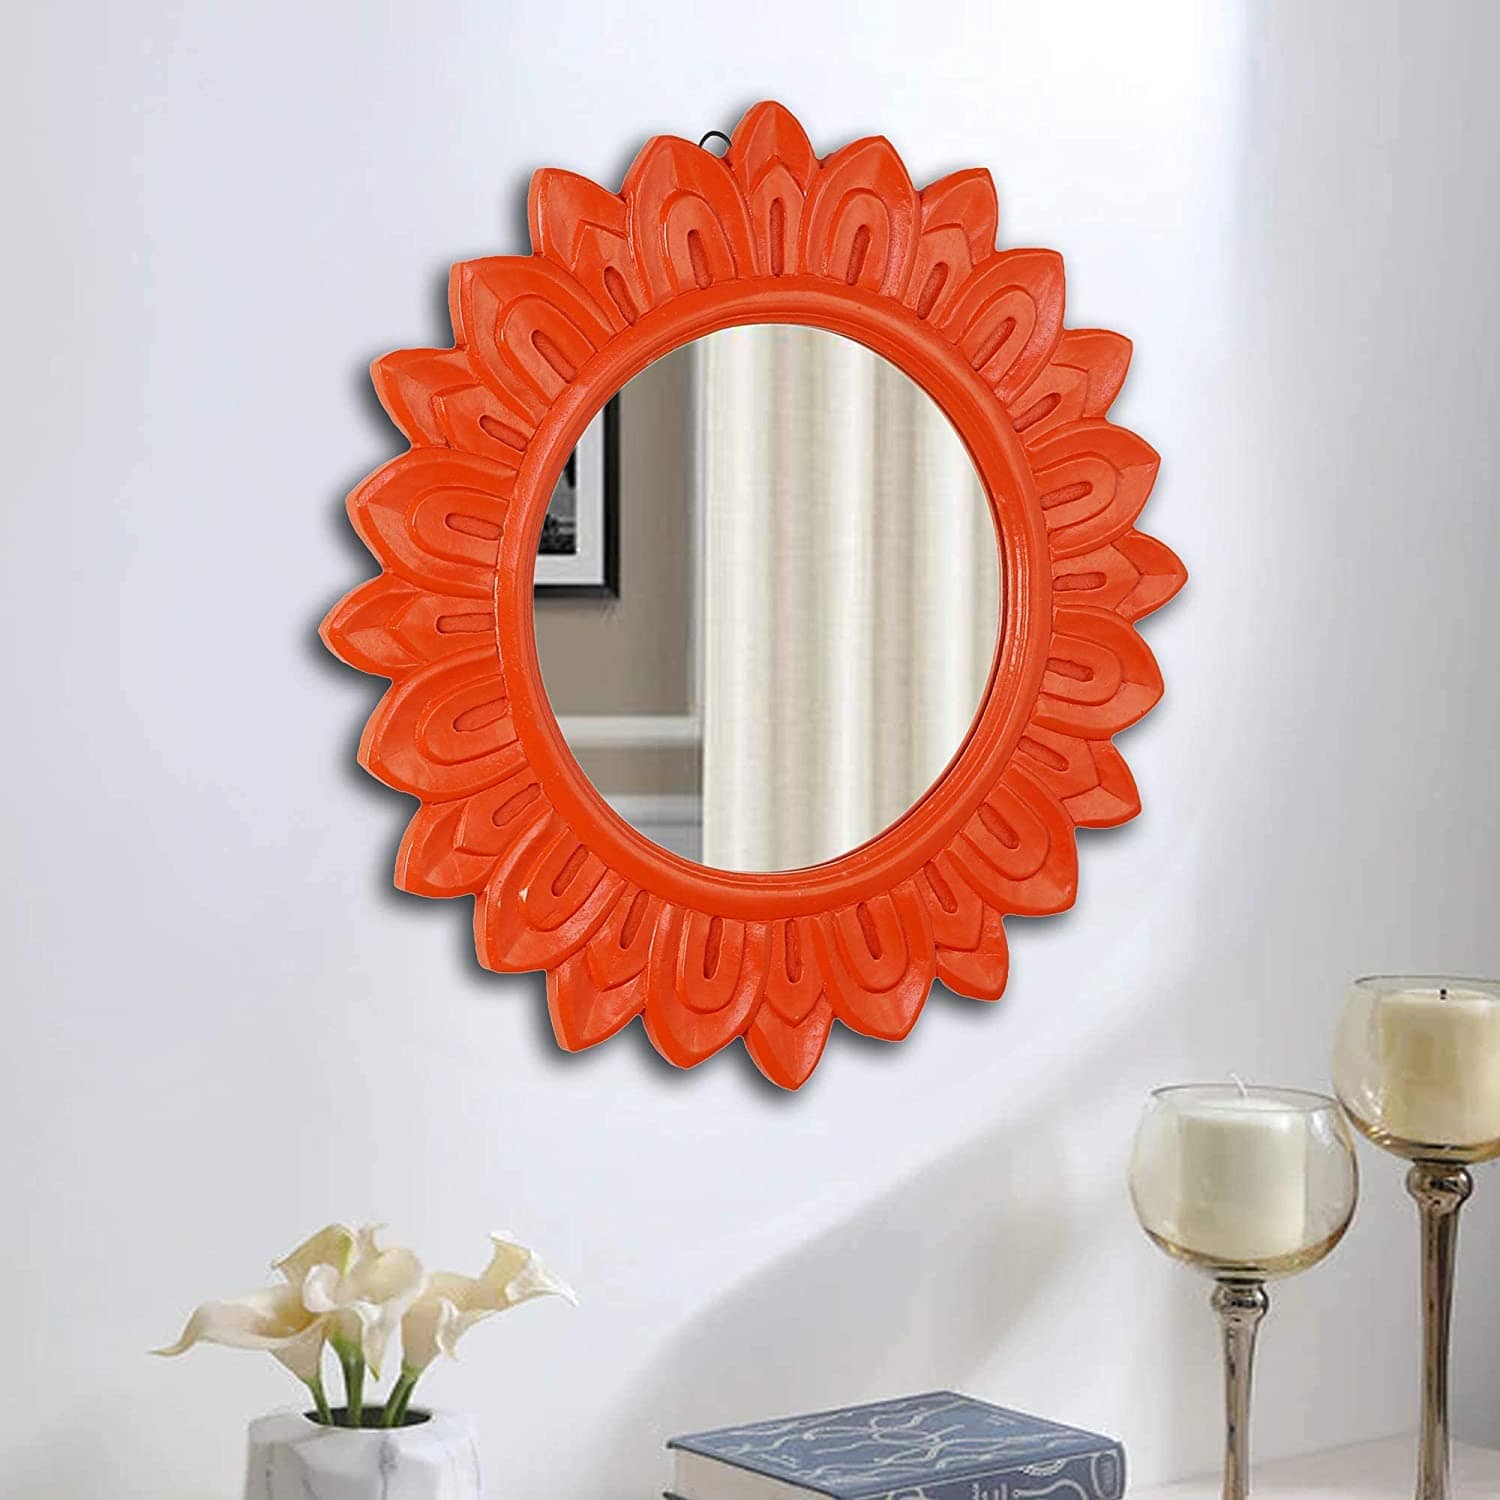 Handcrafted Wood Wall Mirror (50.8 cm x 50.8 cm x 2.5 cm, Orange)